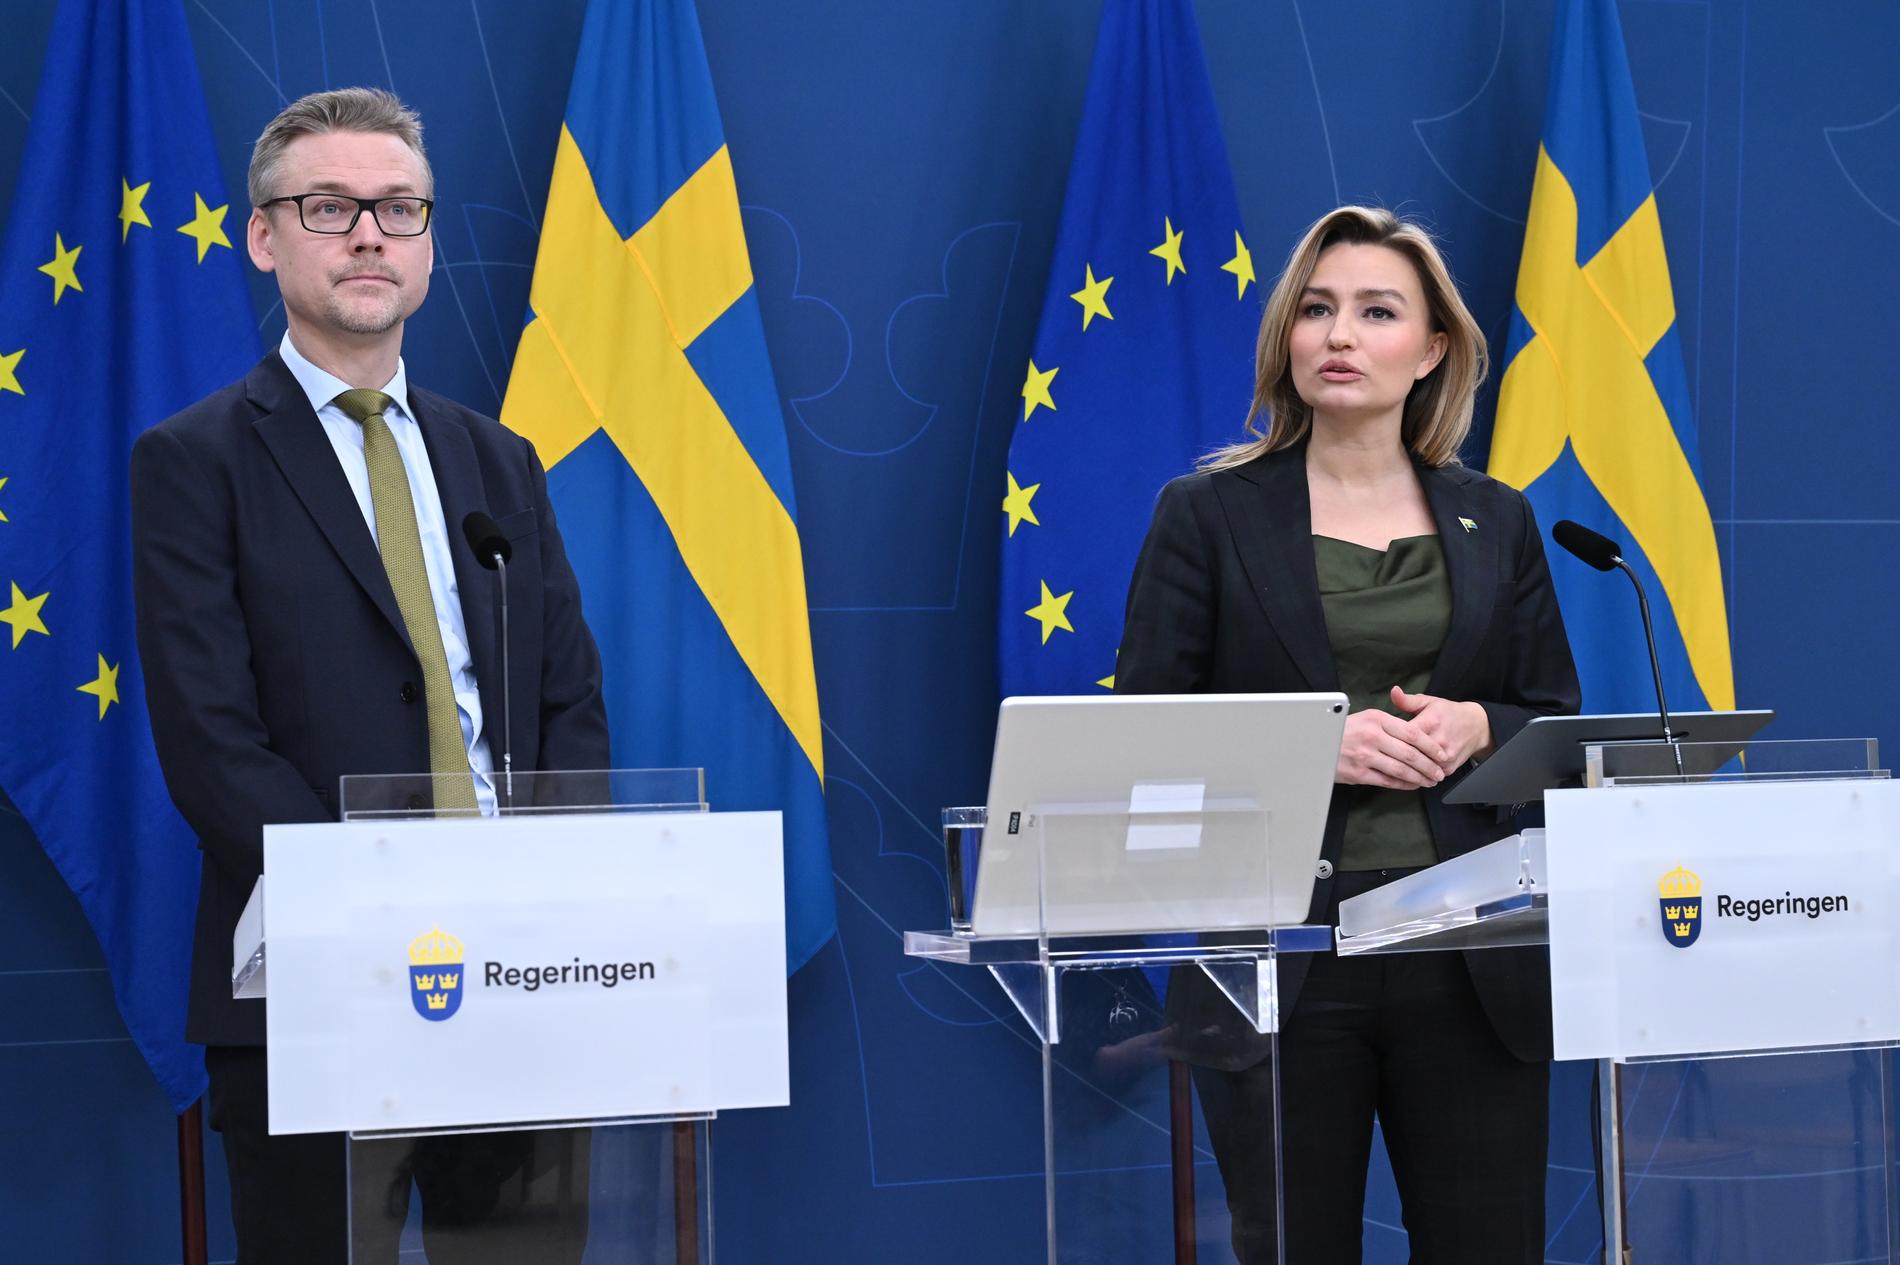 Energi- och näringsminister Ebba Busch (KD) under torsdagens pressträff på regeringskansliet Rosenbad. Regeringen har tillsatt Carl Berglöf som nationell kärnkraftssamordnare.